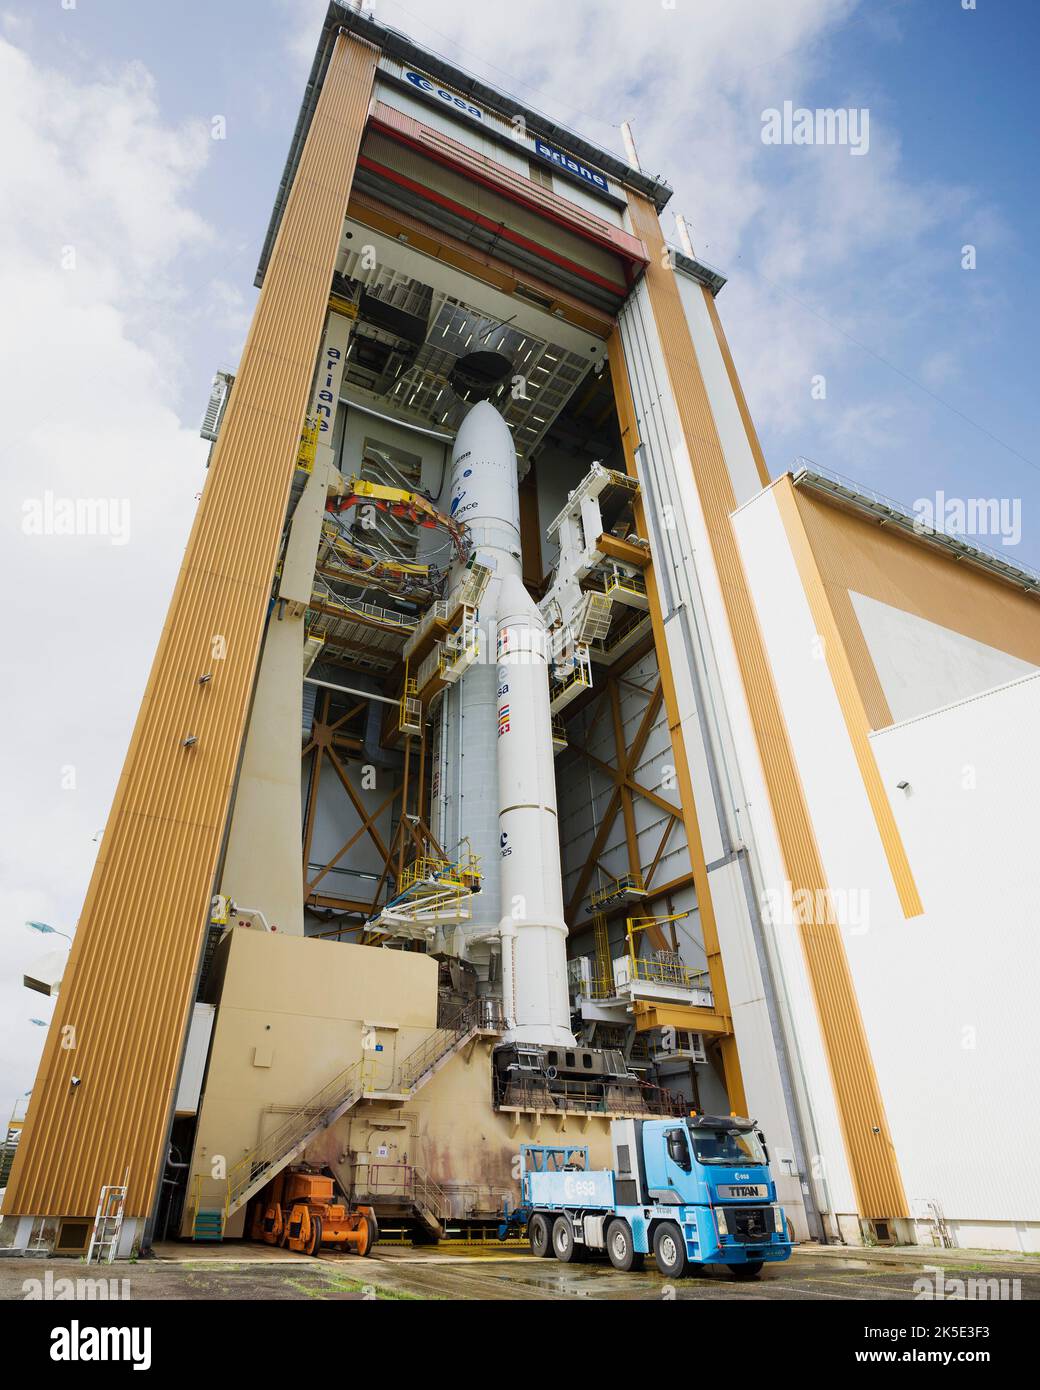 Das James Webb Weltraumteleskop der NASA hat mit dem stattlichen Rollout des Arianespace ELA-3-Starterkomplexes am europäischen Weltraumbahnhof in der Nähe von Kourou, Französisch-Guayana, begonnen. Arianespace und die NASA werden die Vitalparameter von Webb und der Ariane-5-Rakete während des fast zweistündigen Prozesses genau überwachen. Webb wurde am 25. Dezember 2022 gestartet. Eine optimierte Version eines NASA-Bildes vom erfahrenen Hauptfotografen Chris Gunn. Quelle: NASA/Chris Gunn. Stockfoto